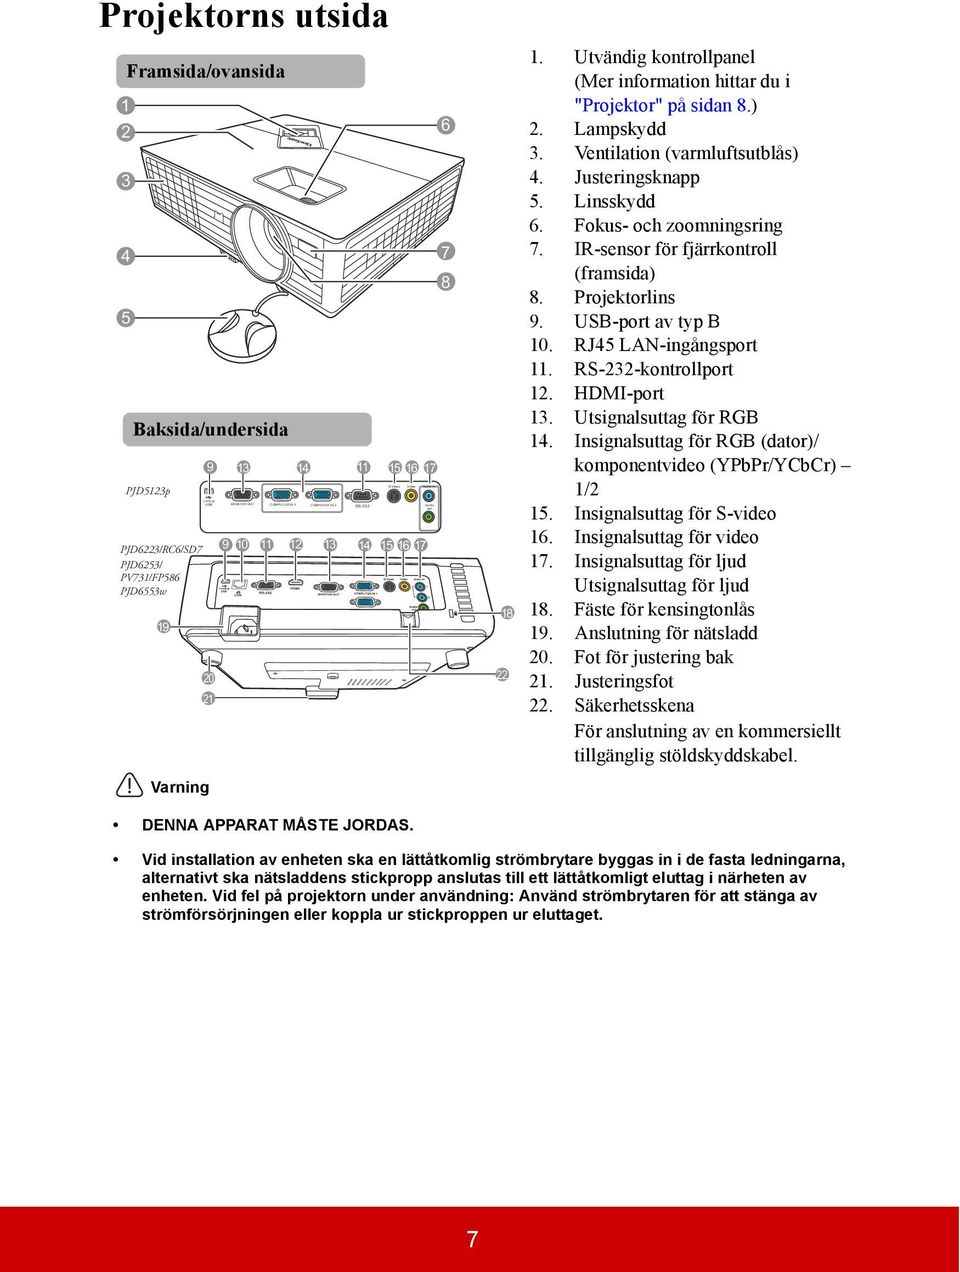 ) 2. Lampskydd 3. Ventilation (varmluftsutblås) 4. Justeringsknapp 5. Linsskydd 6. Fokus- och zoomningsring 7. IR-sensor för fjärrkontroll (framsida) 8. Projektorlins 9. USB-port av typ B 10.